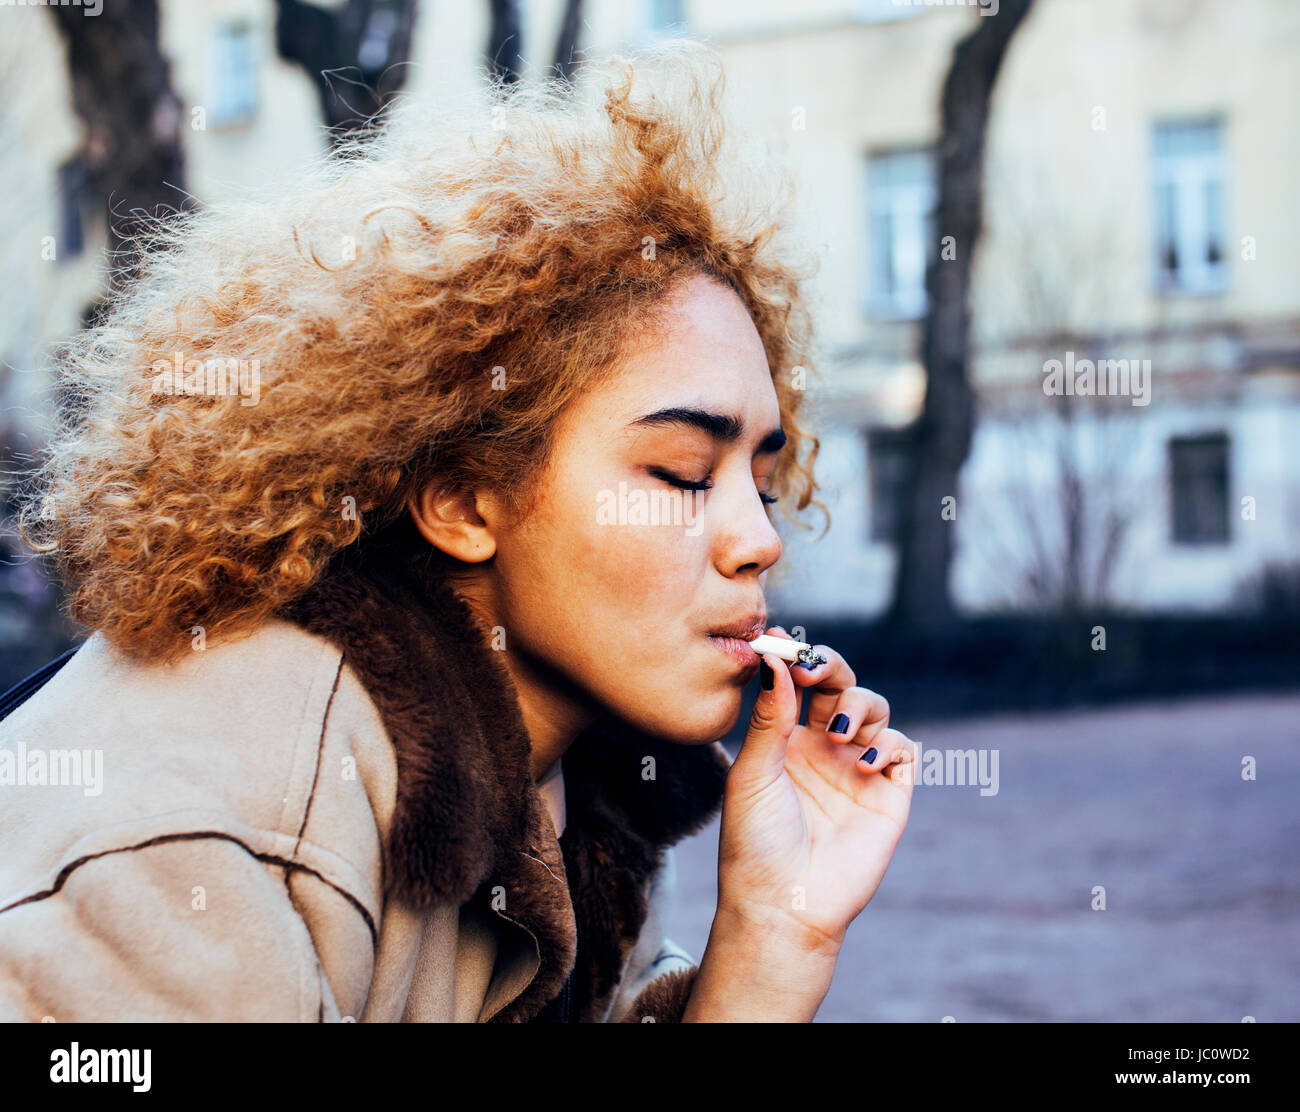 junges hübsches Mädchen Teenager außerhalb qualmender Zigarette hautnah, lo Stockfoto